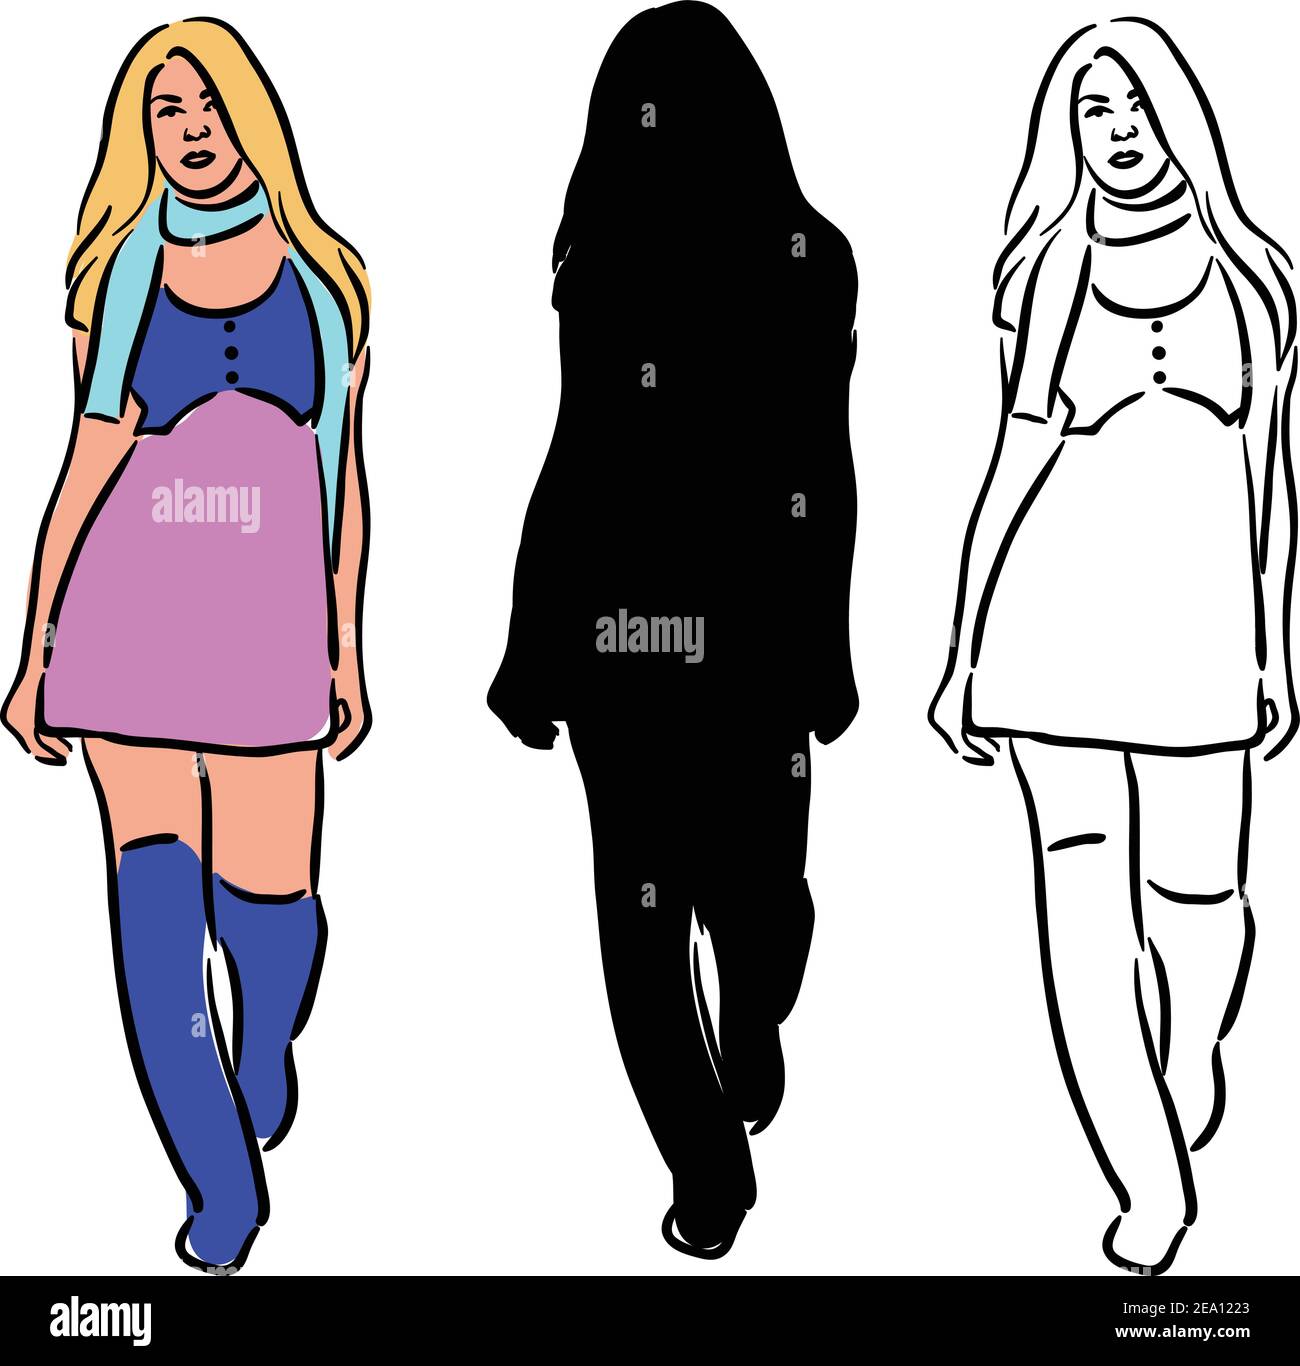 Laufsteg , Mode Vektor Stock Illustration , Frauen in Rampe zu Fuß Stock Vektor